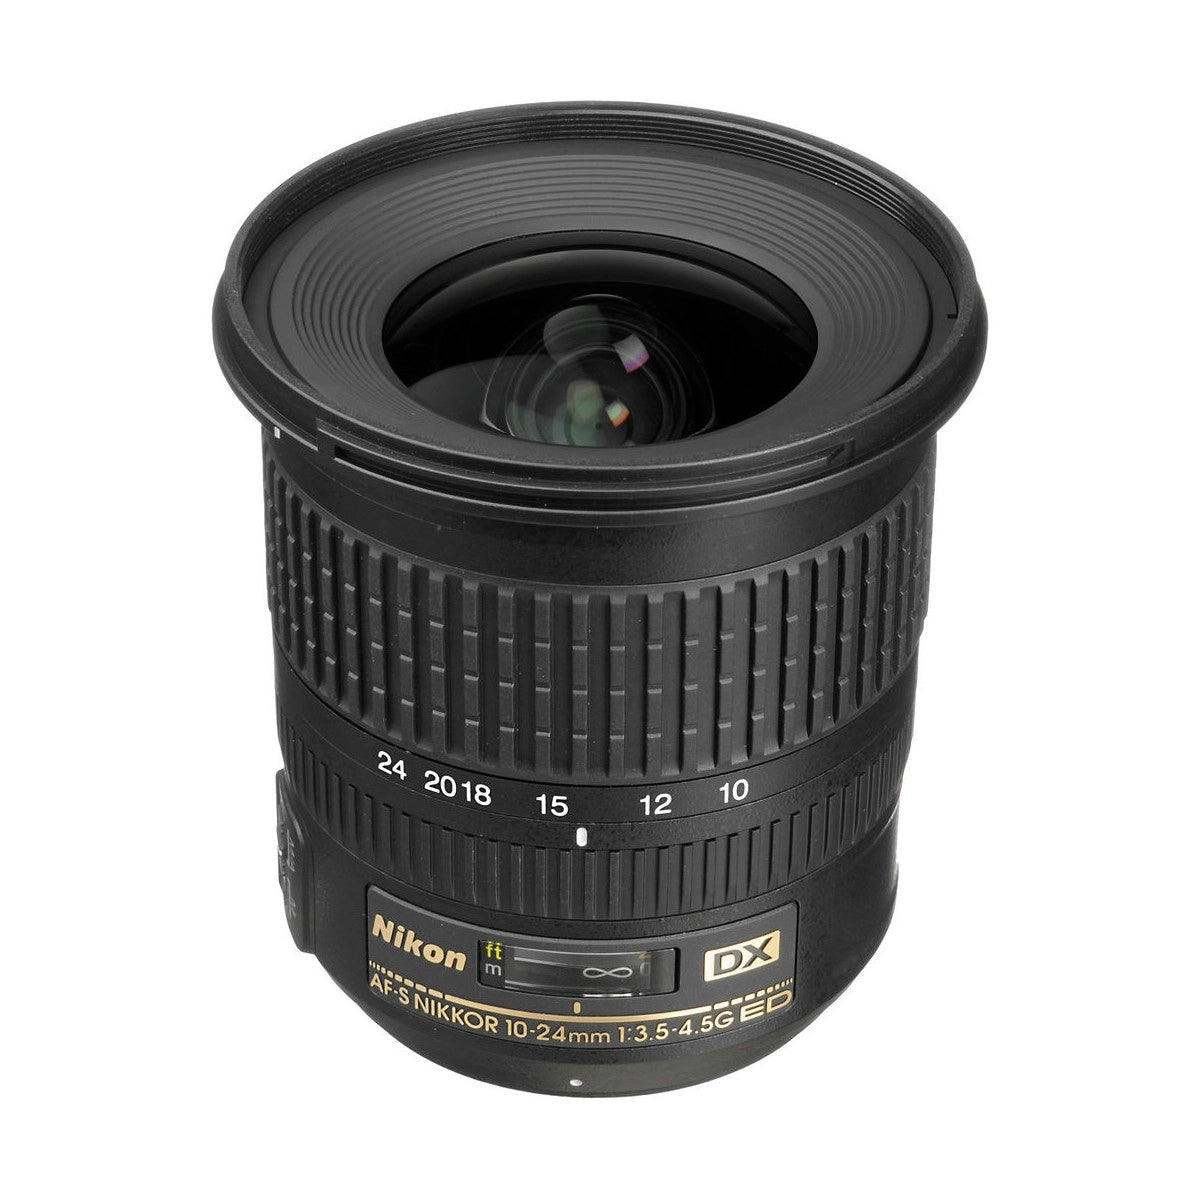 Refurbished Nikon AF-S DX Nikkor 10-24mm F3.5-4.5 G Ultra wide-angle Lens